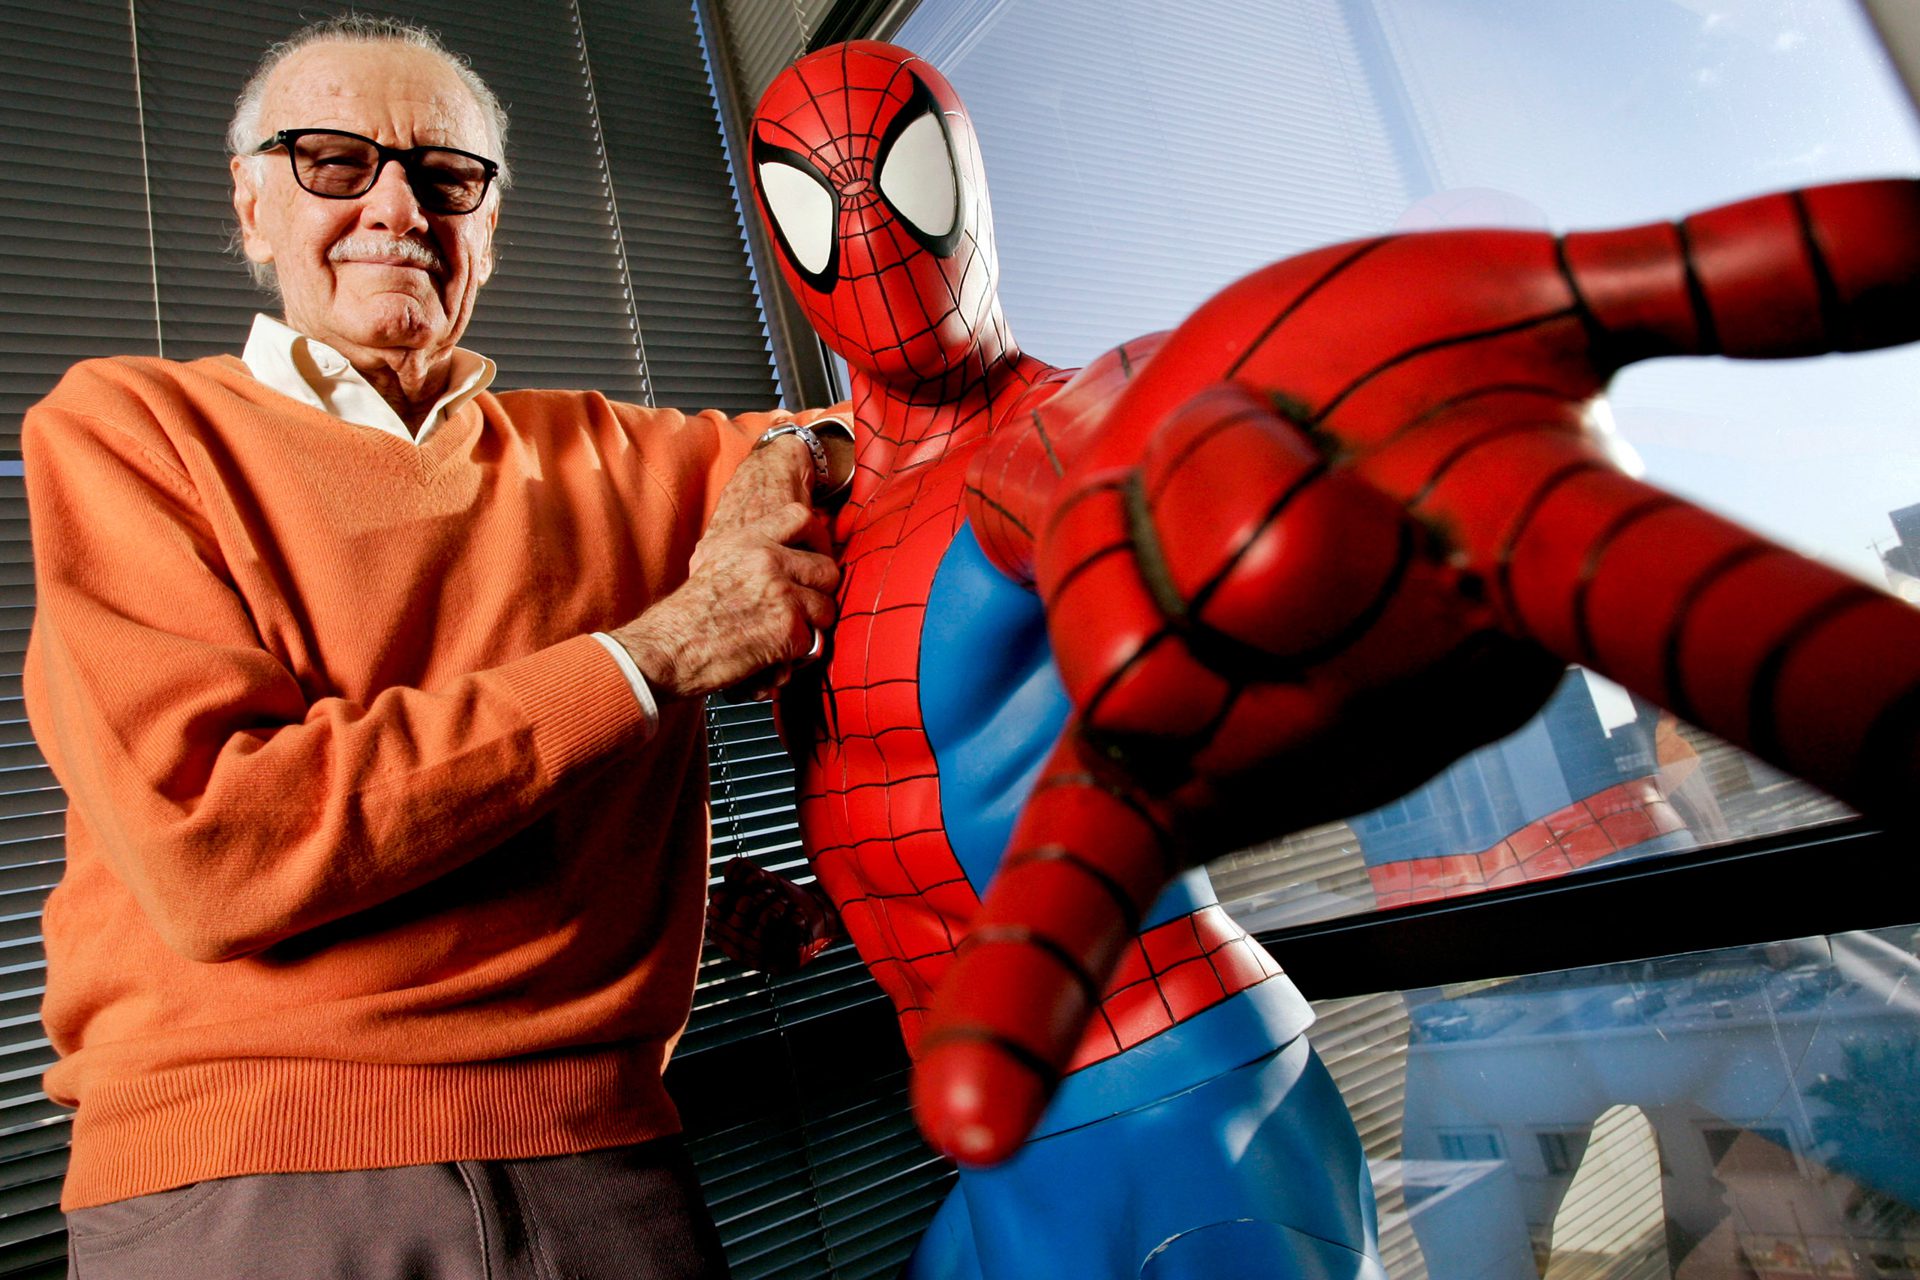 Stan Lee vence luta pelos direitos do Homem-Aranha